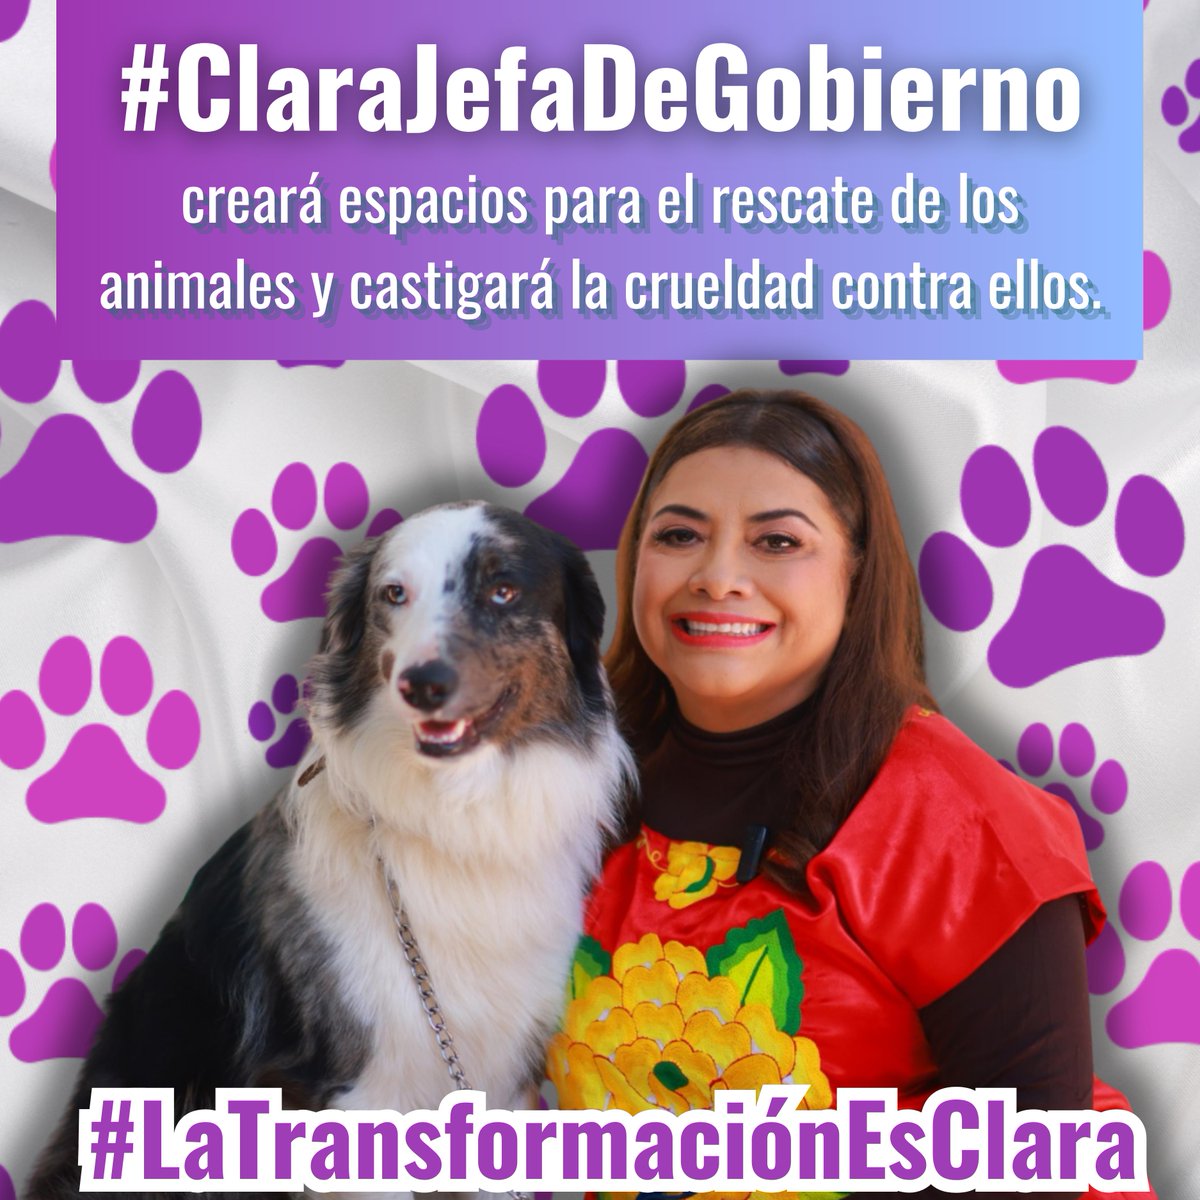 #ClaraJefaDeGobierno 
Clara una mujer humanista y animalista buscando el bienestar para todas, todos y en los animales que no tienen voz pero tienen derecho a una vida digna y justa #ClaraQueSi 
#LaTrqnsformacionEsClara